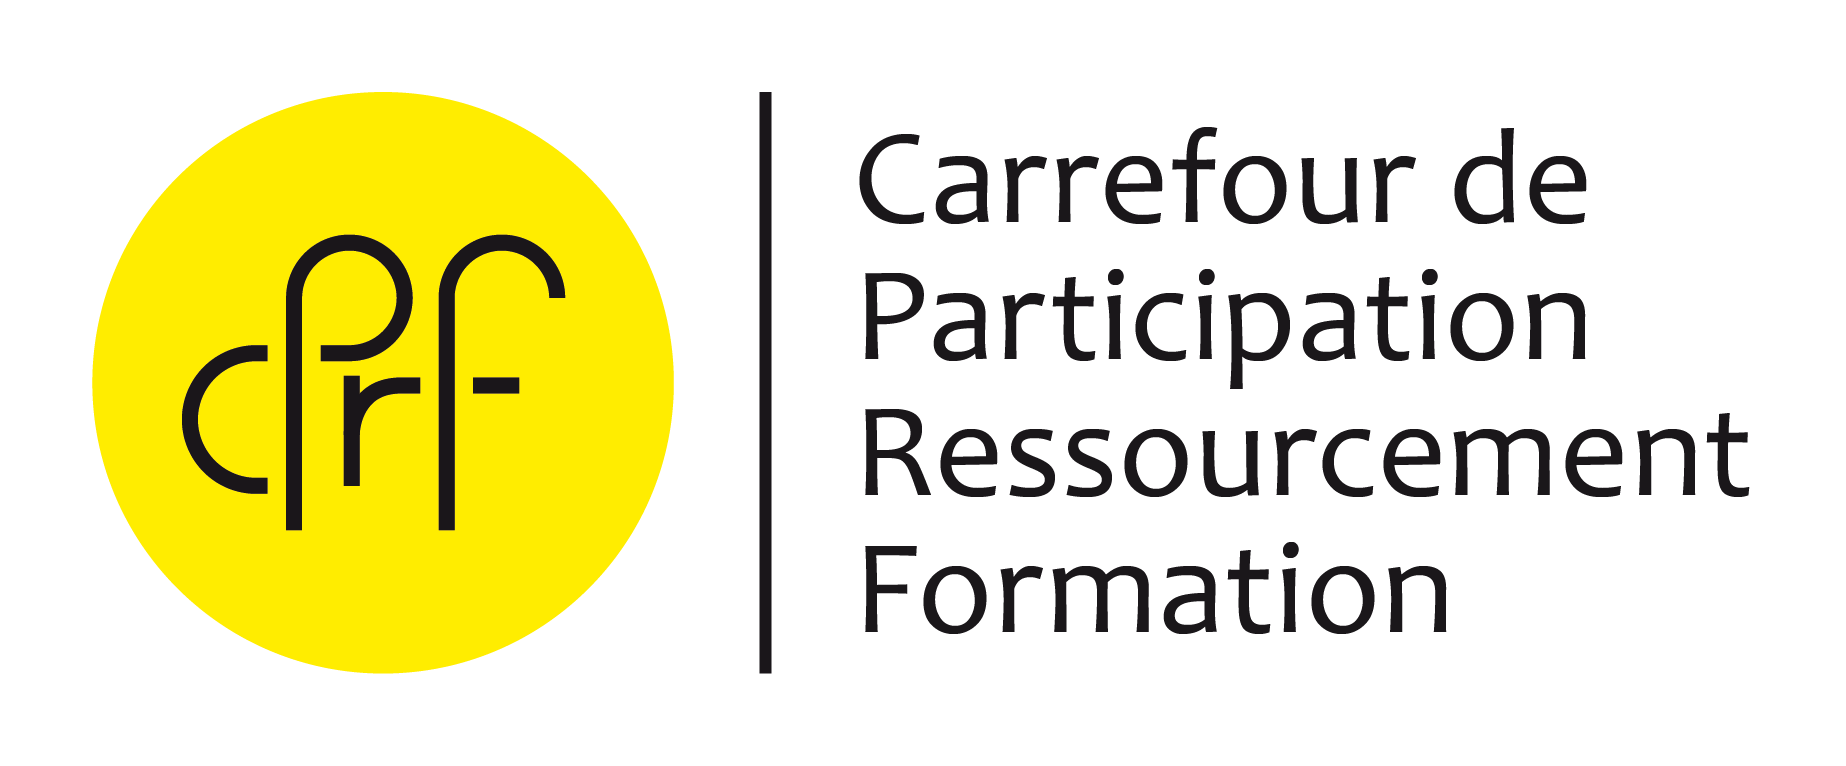 Carrefour de Participation Ressourcement Formation